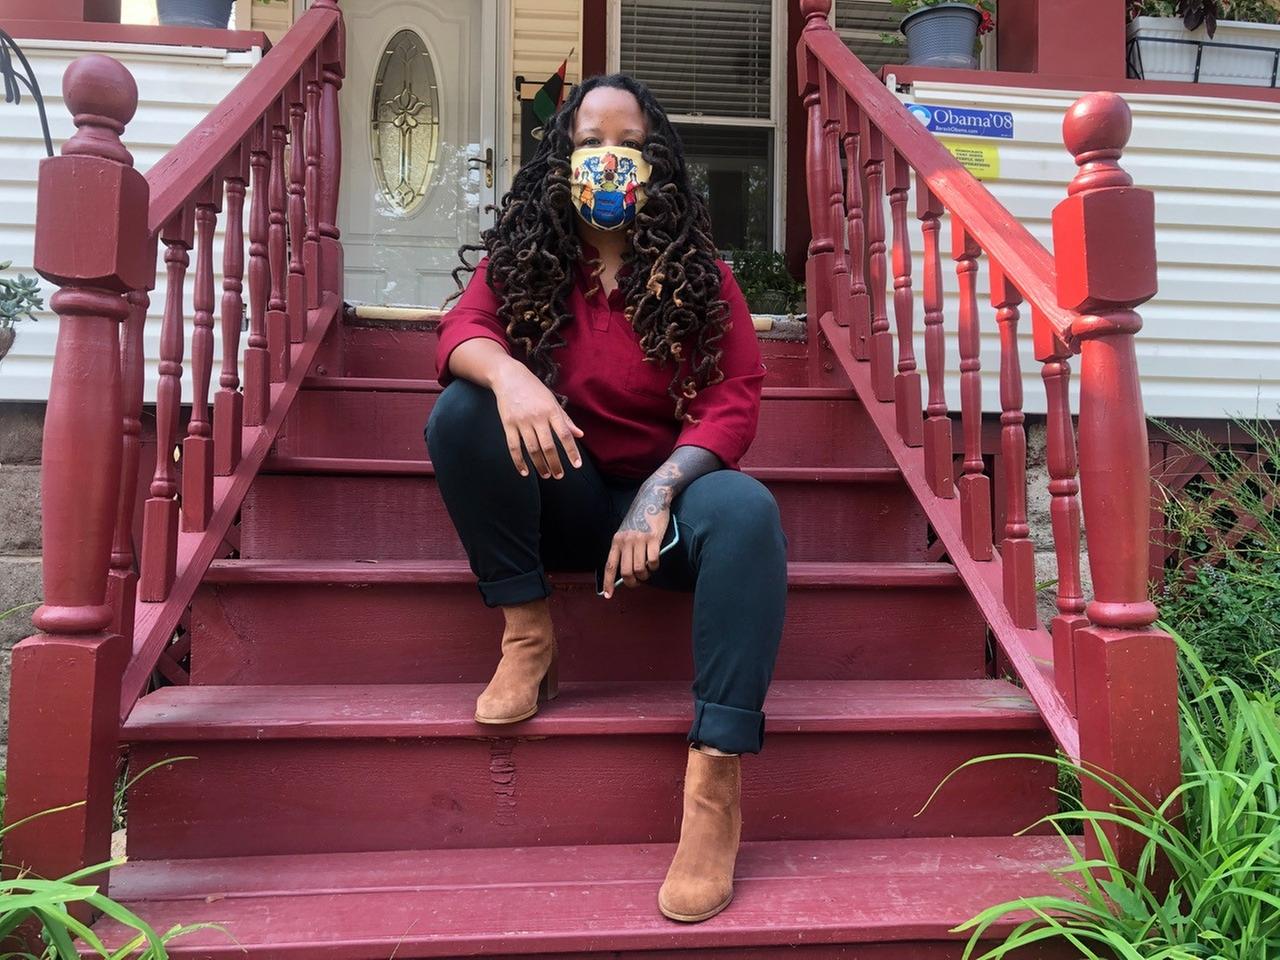 Imani Oakley sitzt auf der Treppe ihres Wohnhauses in der Stadt Montclair. Sie hat lange, schwarze Haare und trägt einen bunten Mund-Nasen-Schutz im Gesicht.